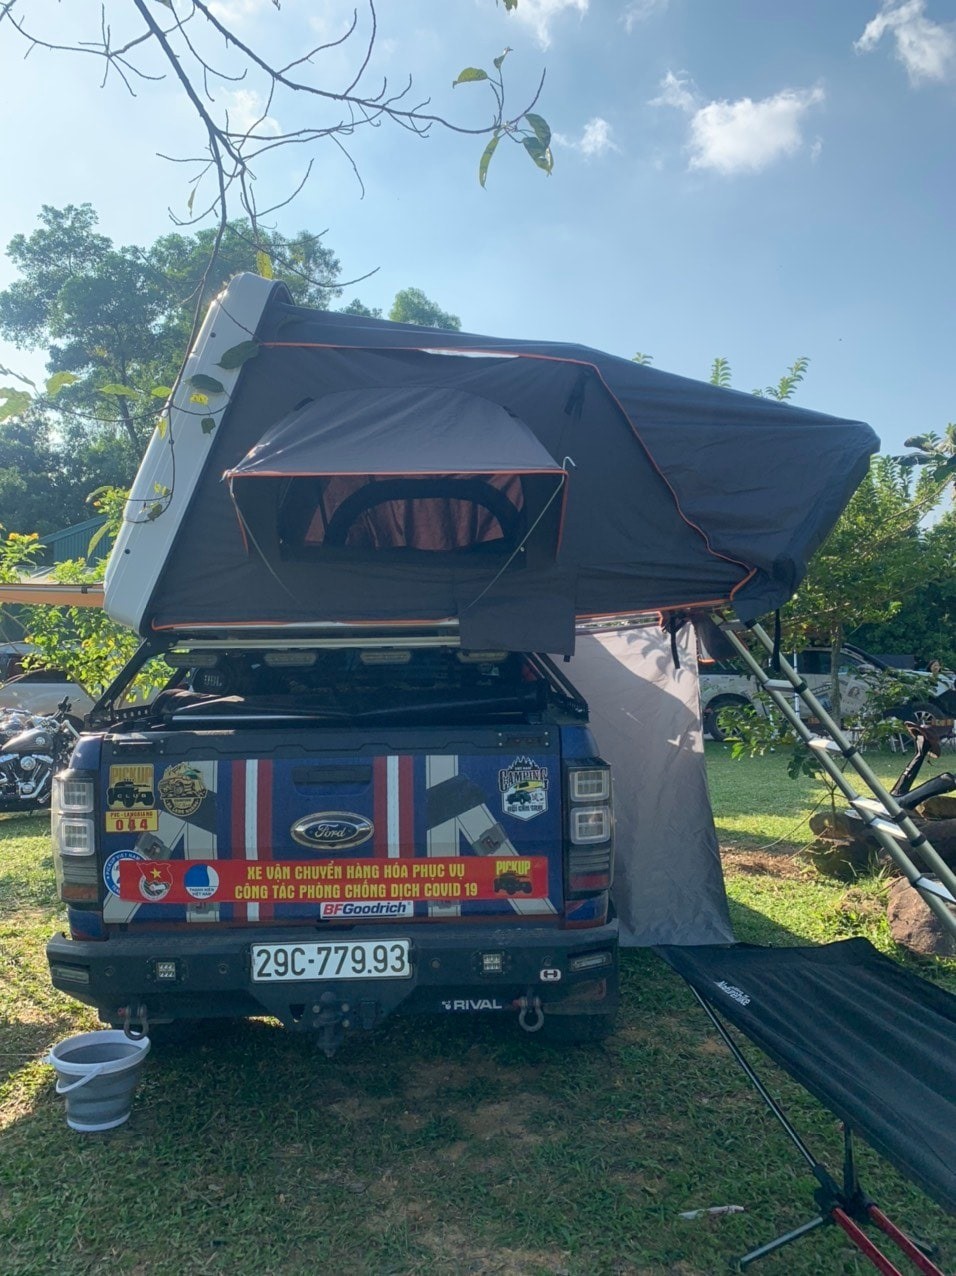 Lựa chọn lều khi đi camping bằng xe ô tô